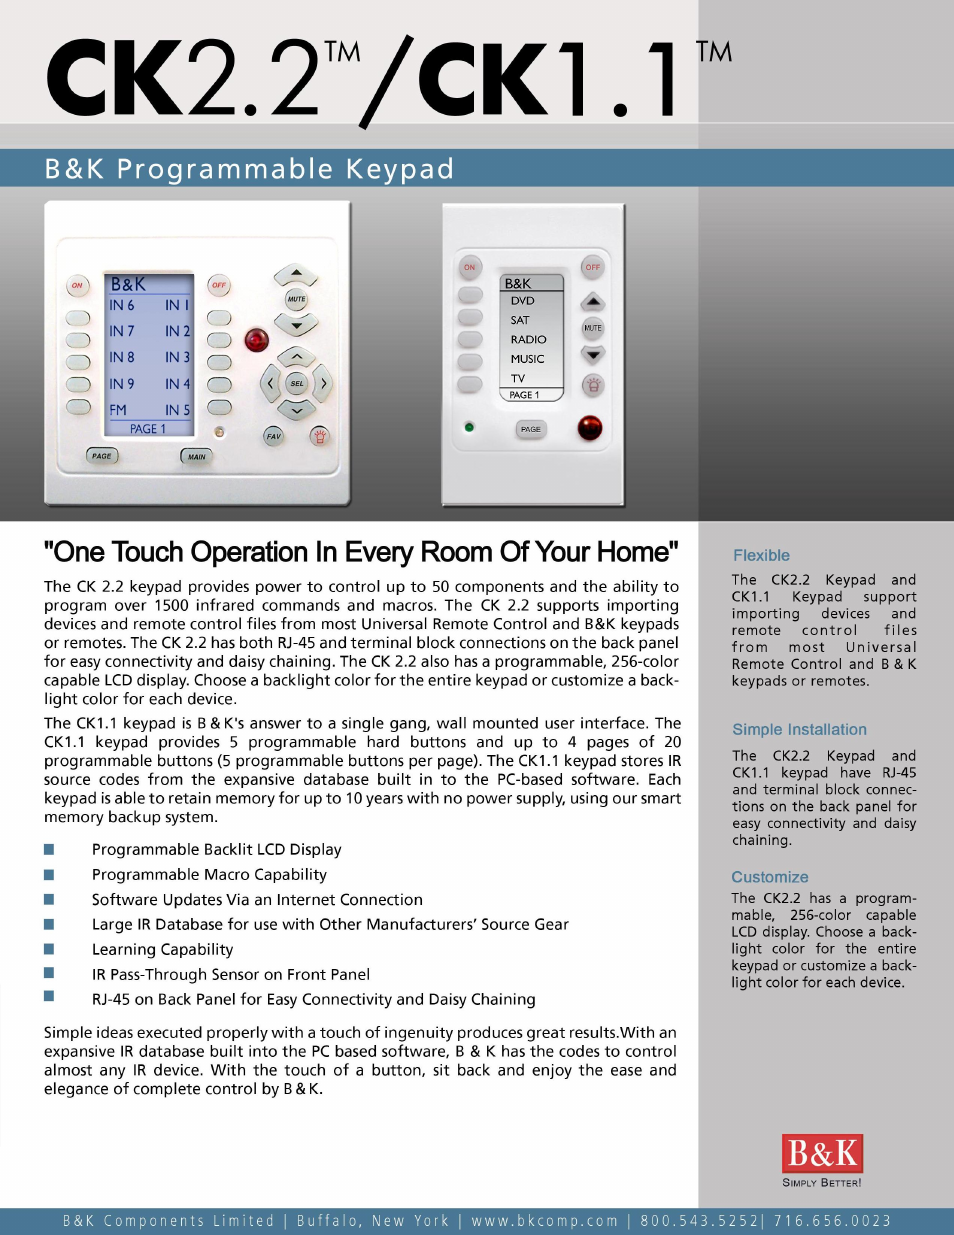 Programmable Keypad CK1.1 (Page 1)